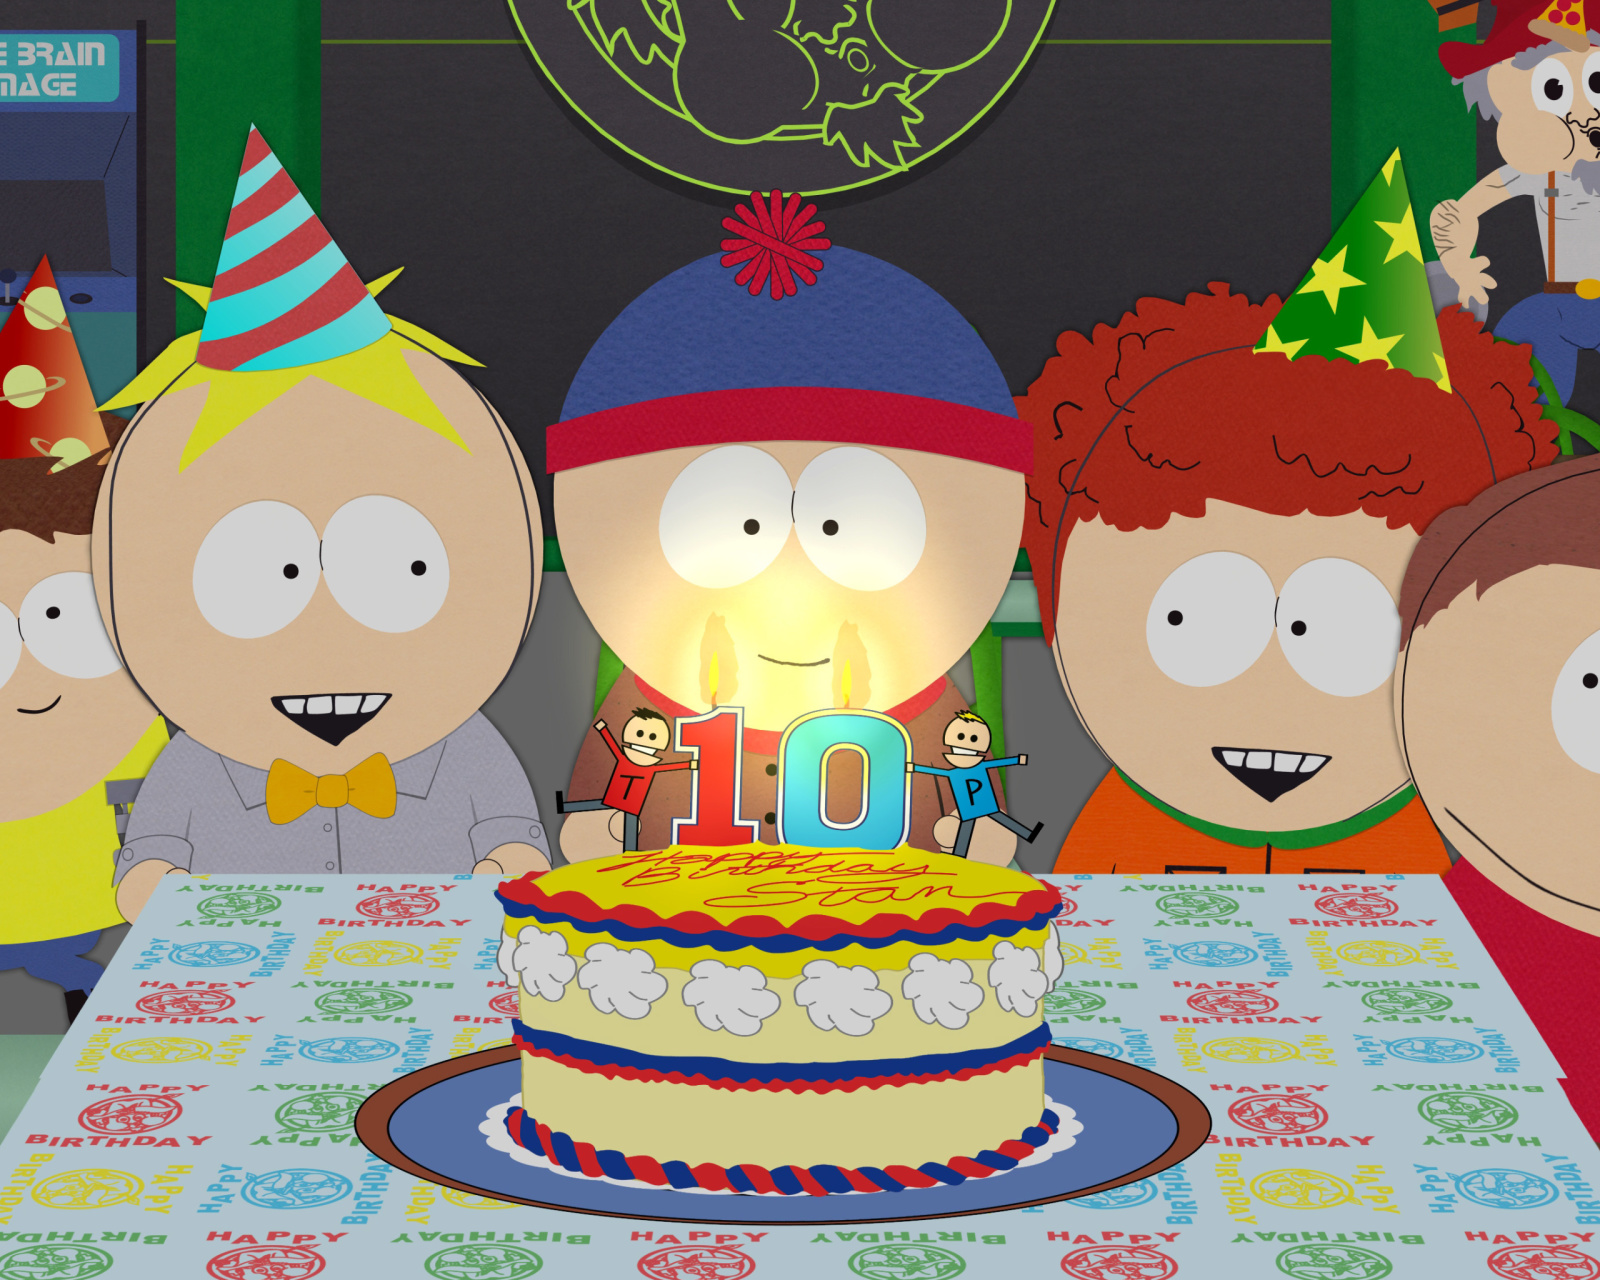 South Park Season 15 Stans Party screenshot #1 1600x1280